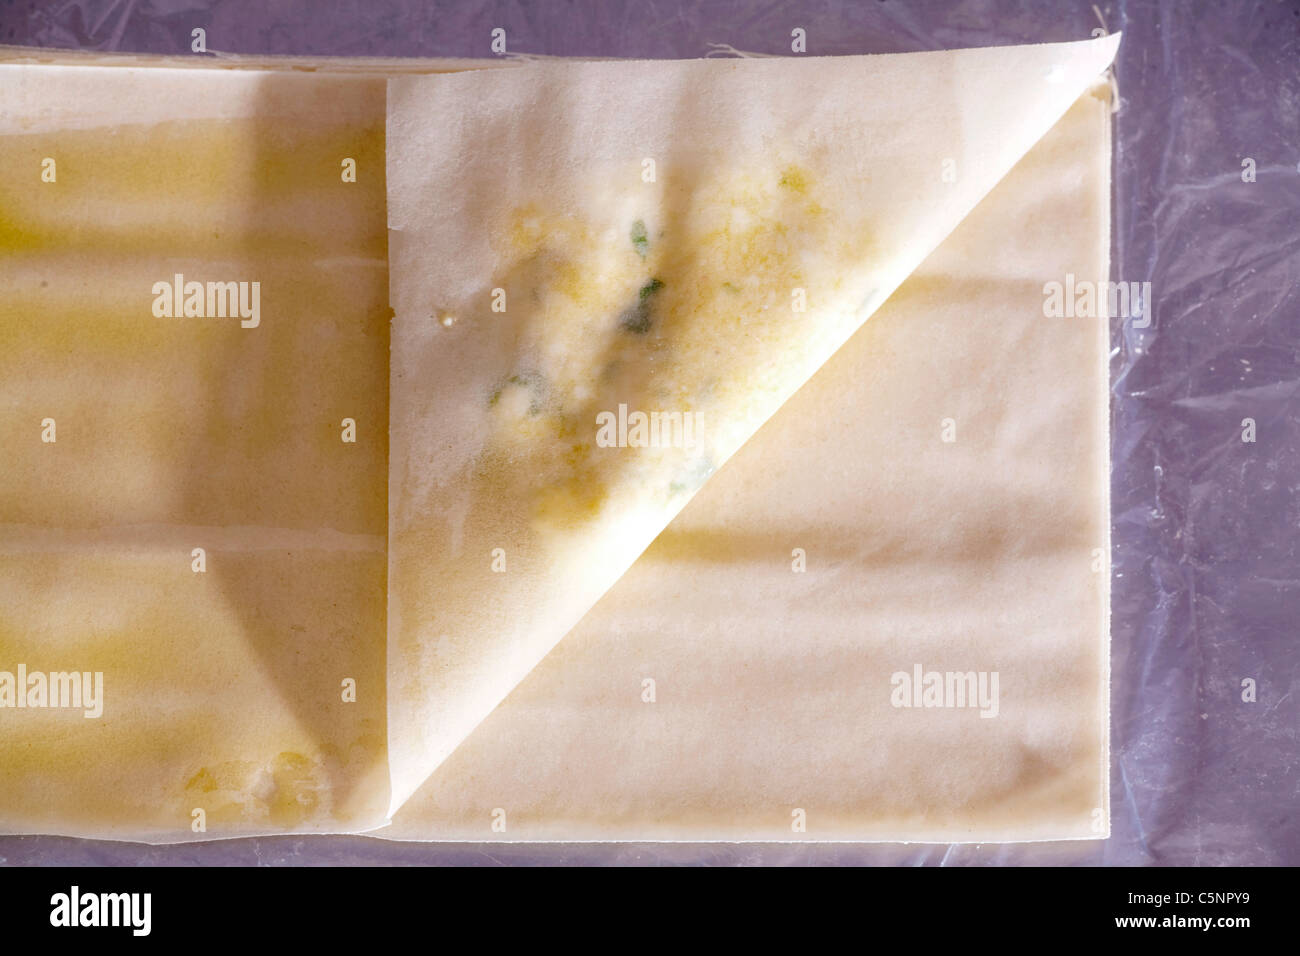 Imbottitura filo la pasta con il formaggio feta, uova e prezzemolo Foto Stock